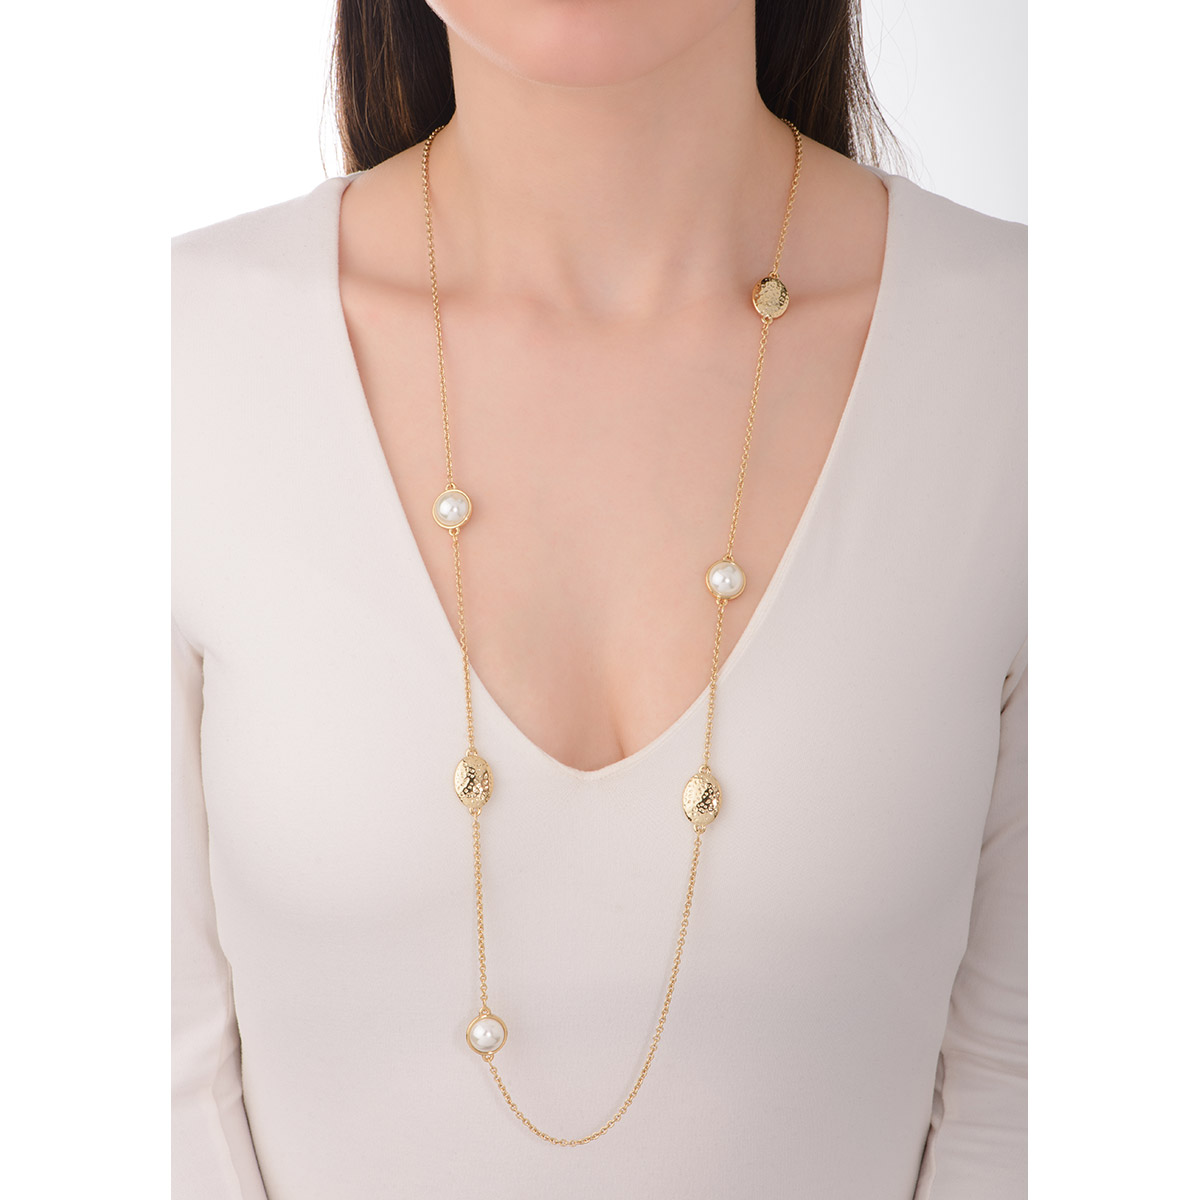 Moderno collar largo con perlas en tono crema y texturas en baño de oro.
-        Collar
-        100 cm
-        Baño  de oro 18k
-        Perlas en tono crema